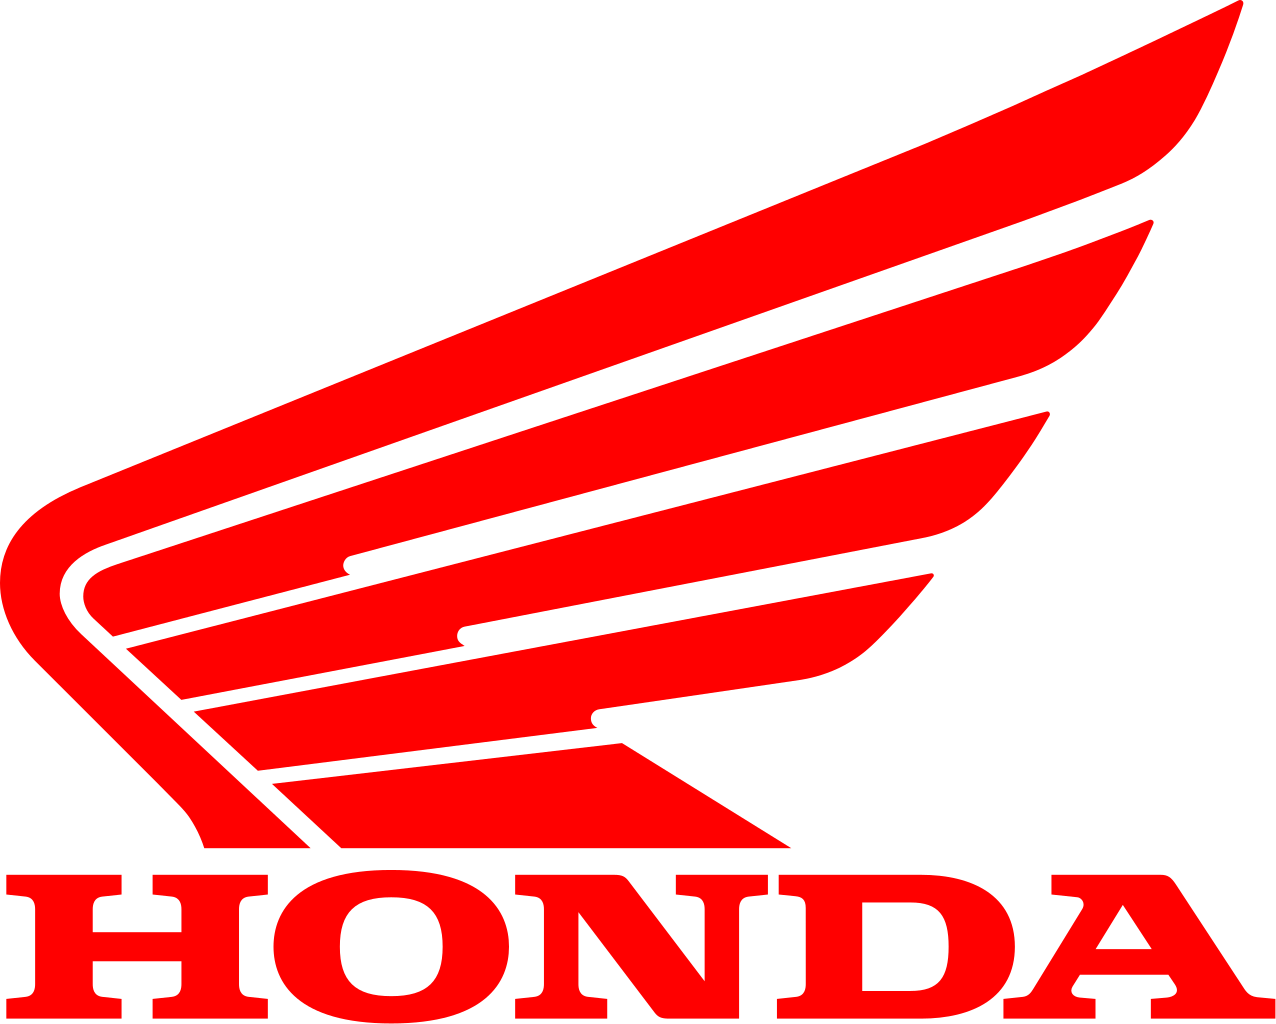 ผลการค้นหารูปภาพสำหรับ honda logo